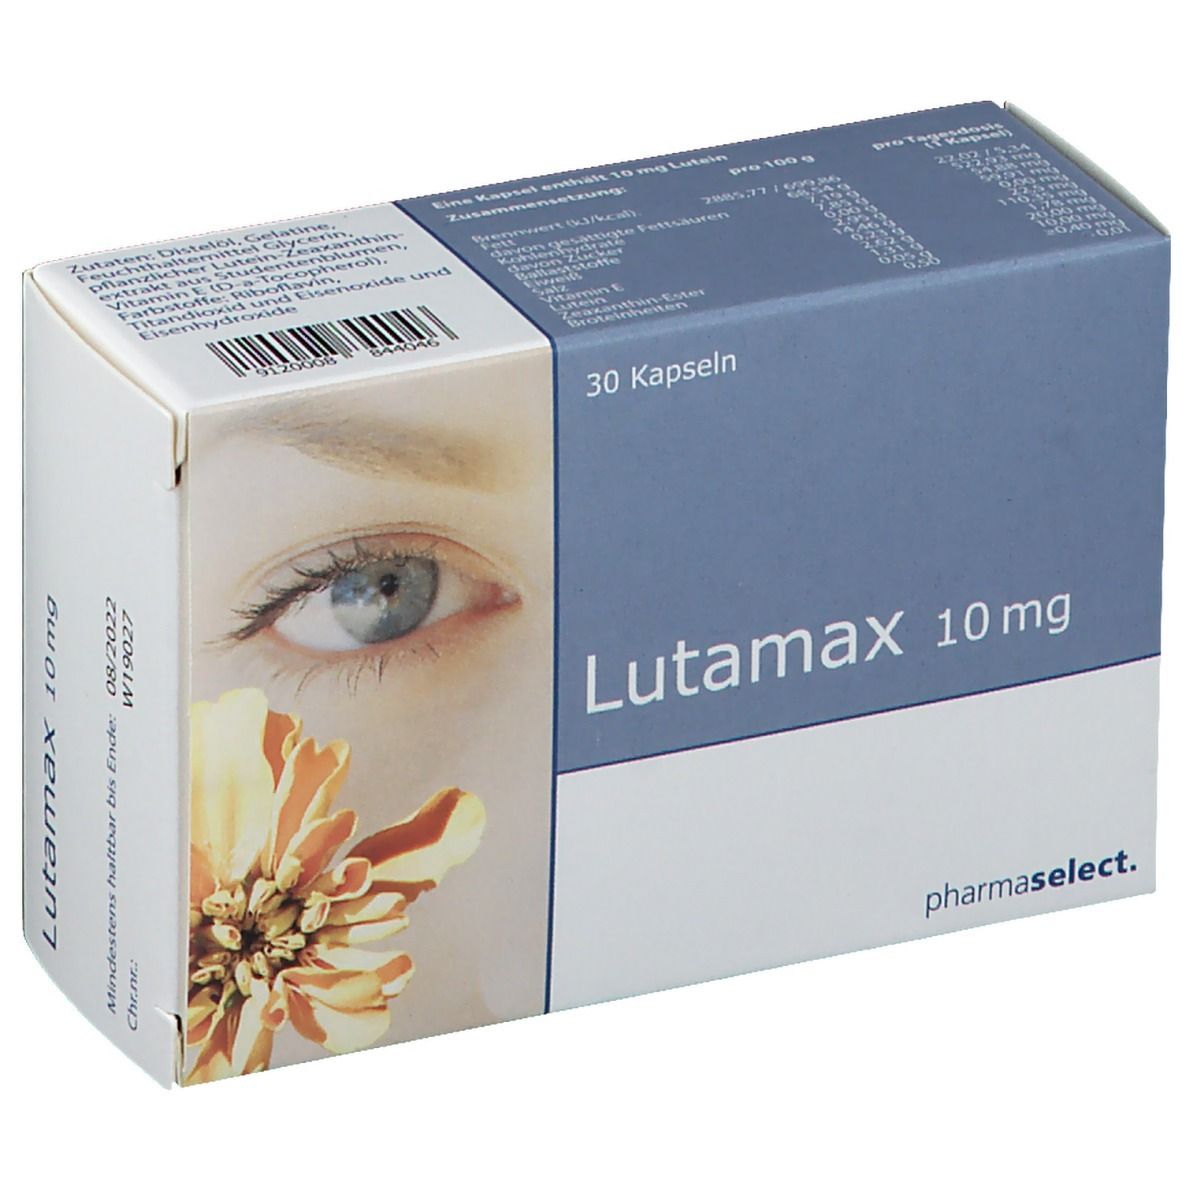 Lutamax 10 mg